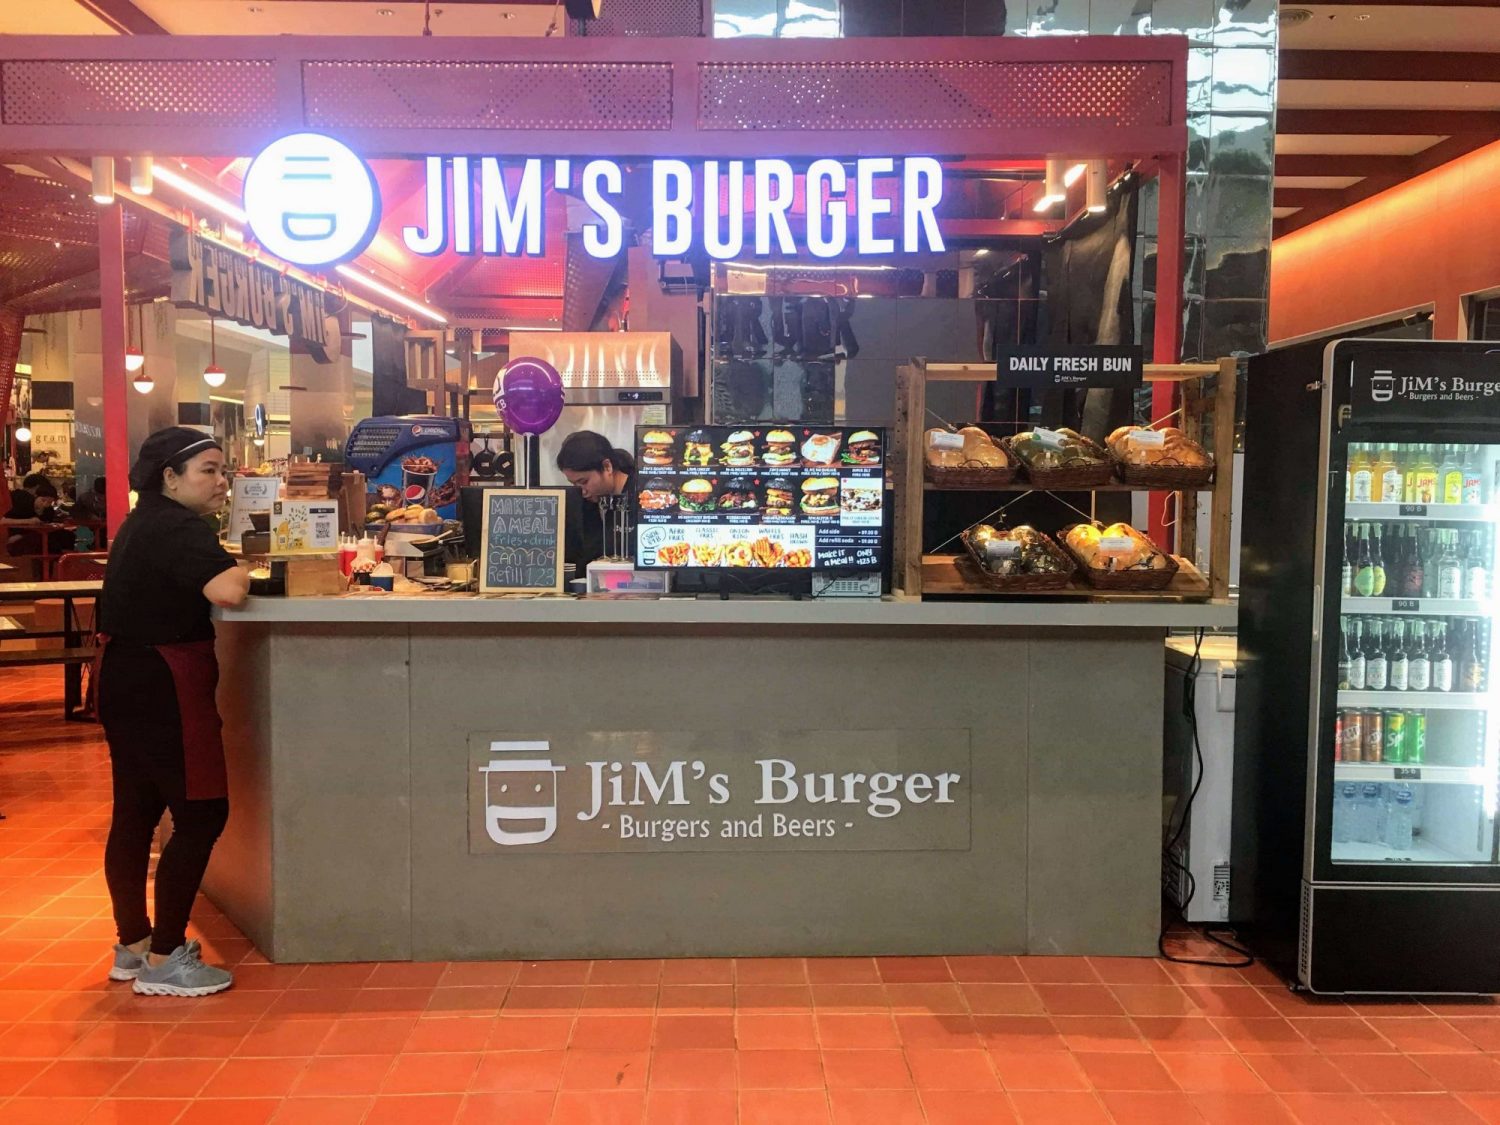 Jim's burger Digital menu